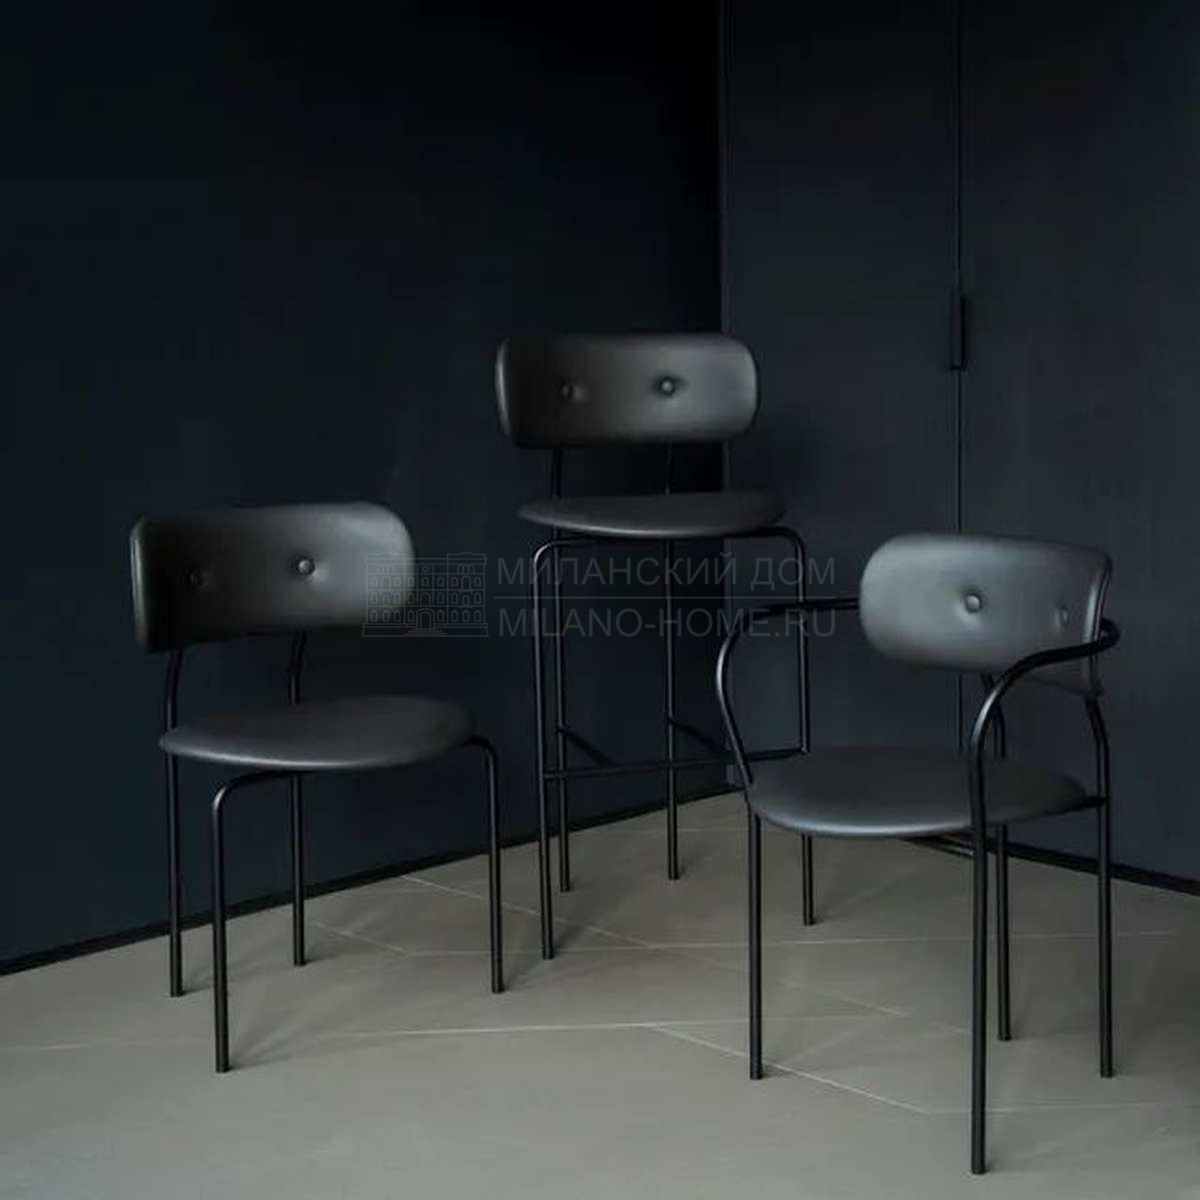 Барный стул Coco bar chair  из Дании фабрики GUBI